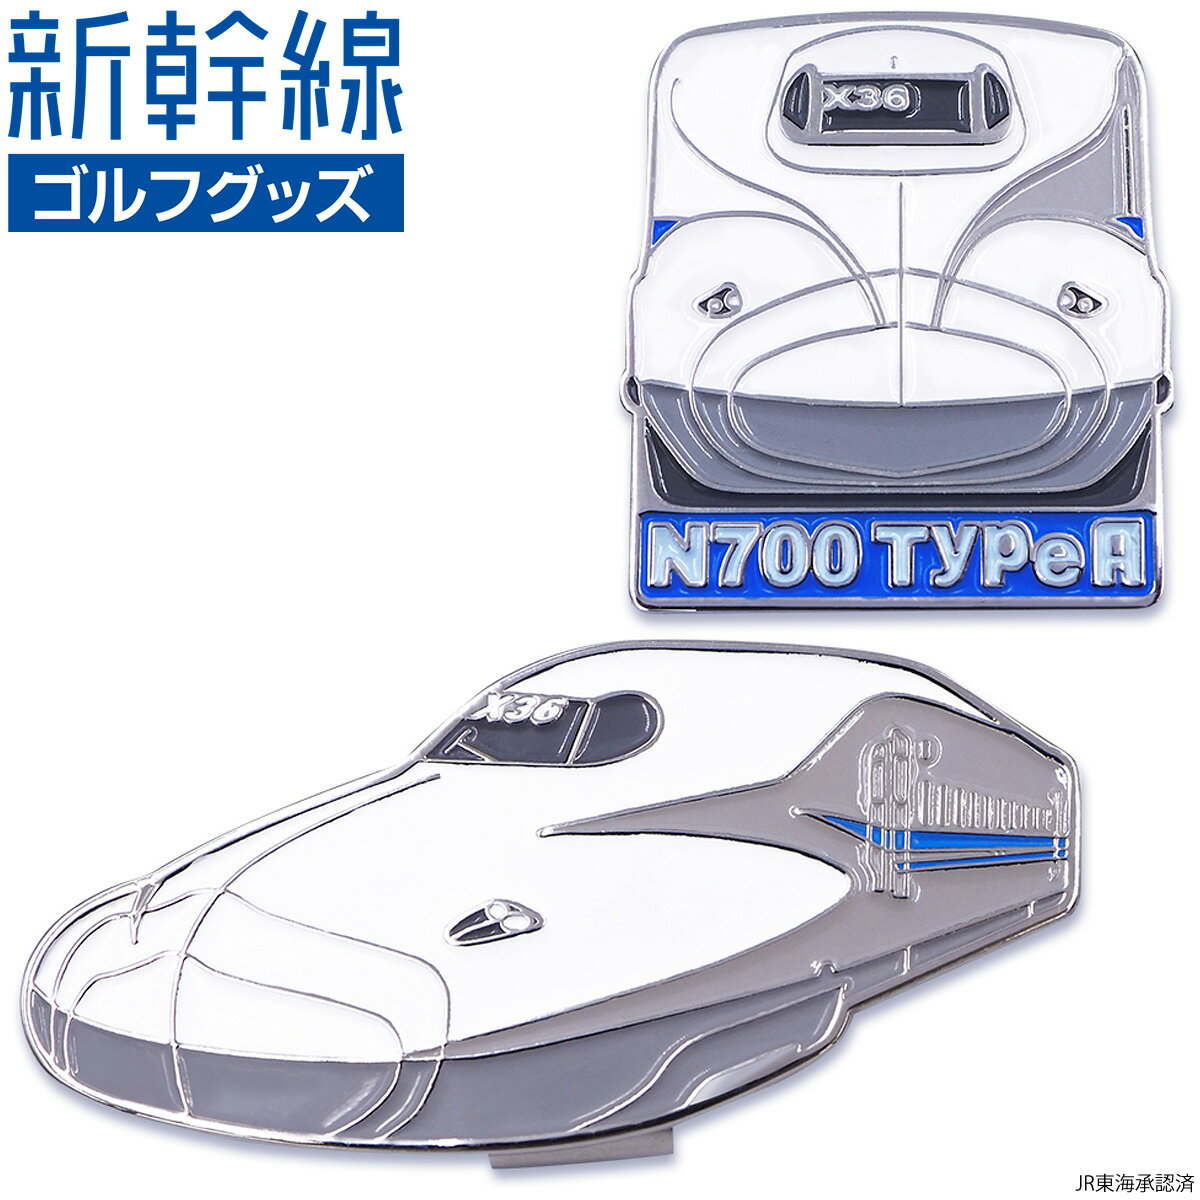 新幹線 N700 TypeA ゴルフマーカー ( クリップタイプ ) 「 SKSM002 」 【あす楽対応】